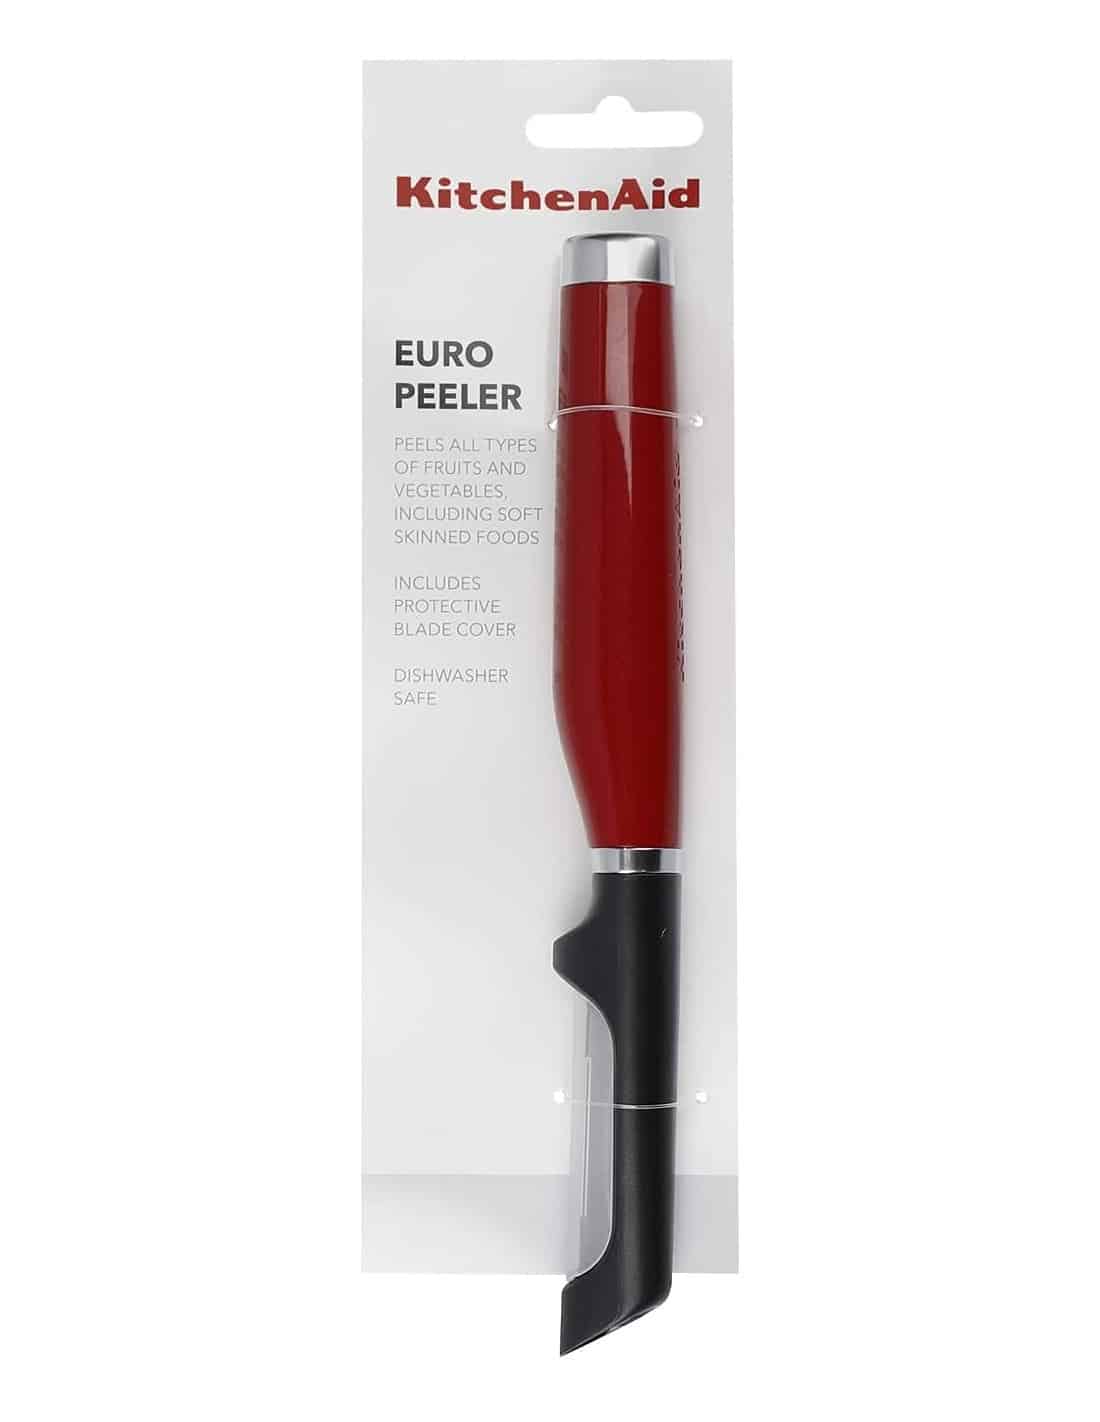 KitchenAid Euro Peeler Black